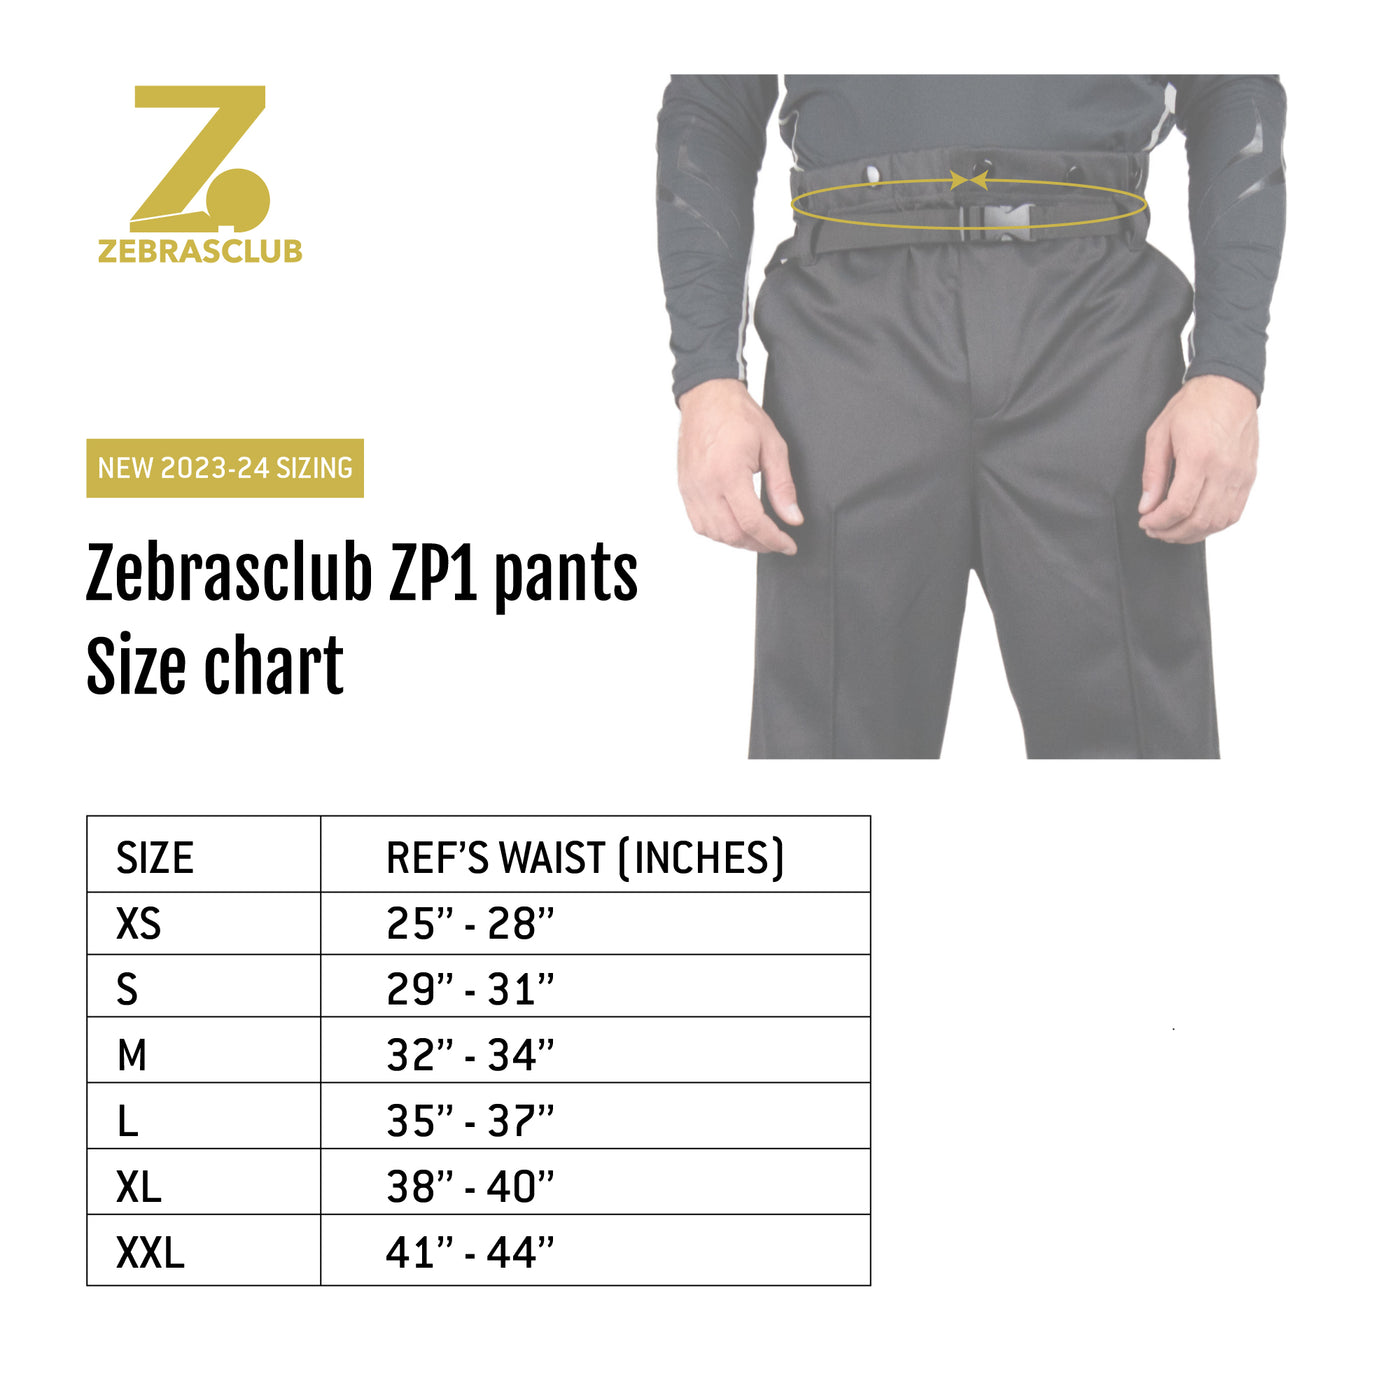 Zebrasclub ZP1 pants size chart